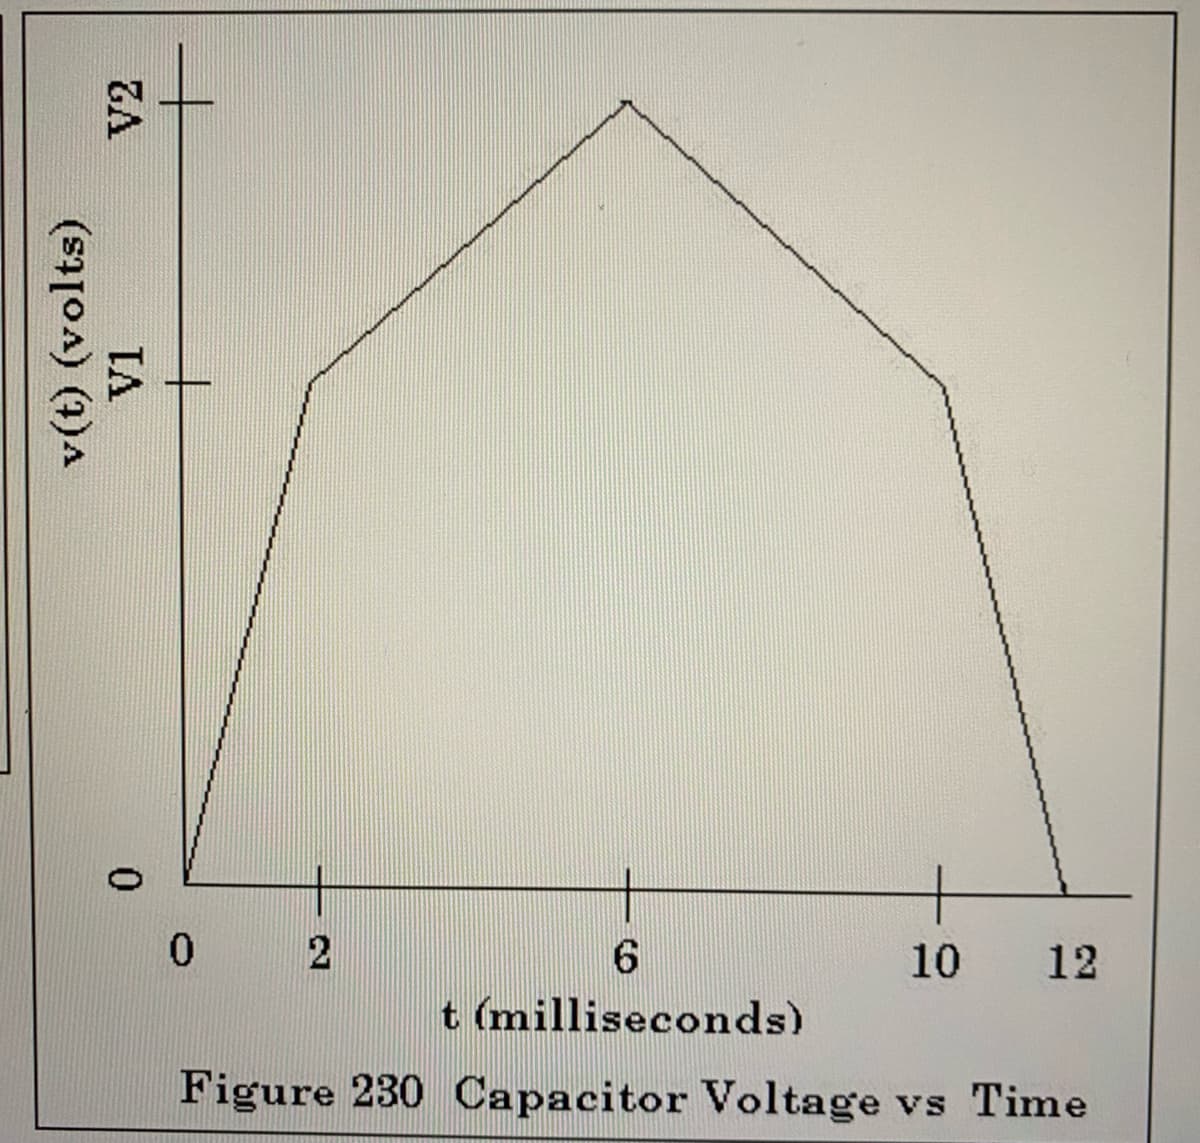 10
12
t (milliseconds)
Figure 230 Capacitor Voltage vs Time
v(t) (volts)
V1
V2
0.
